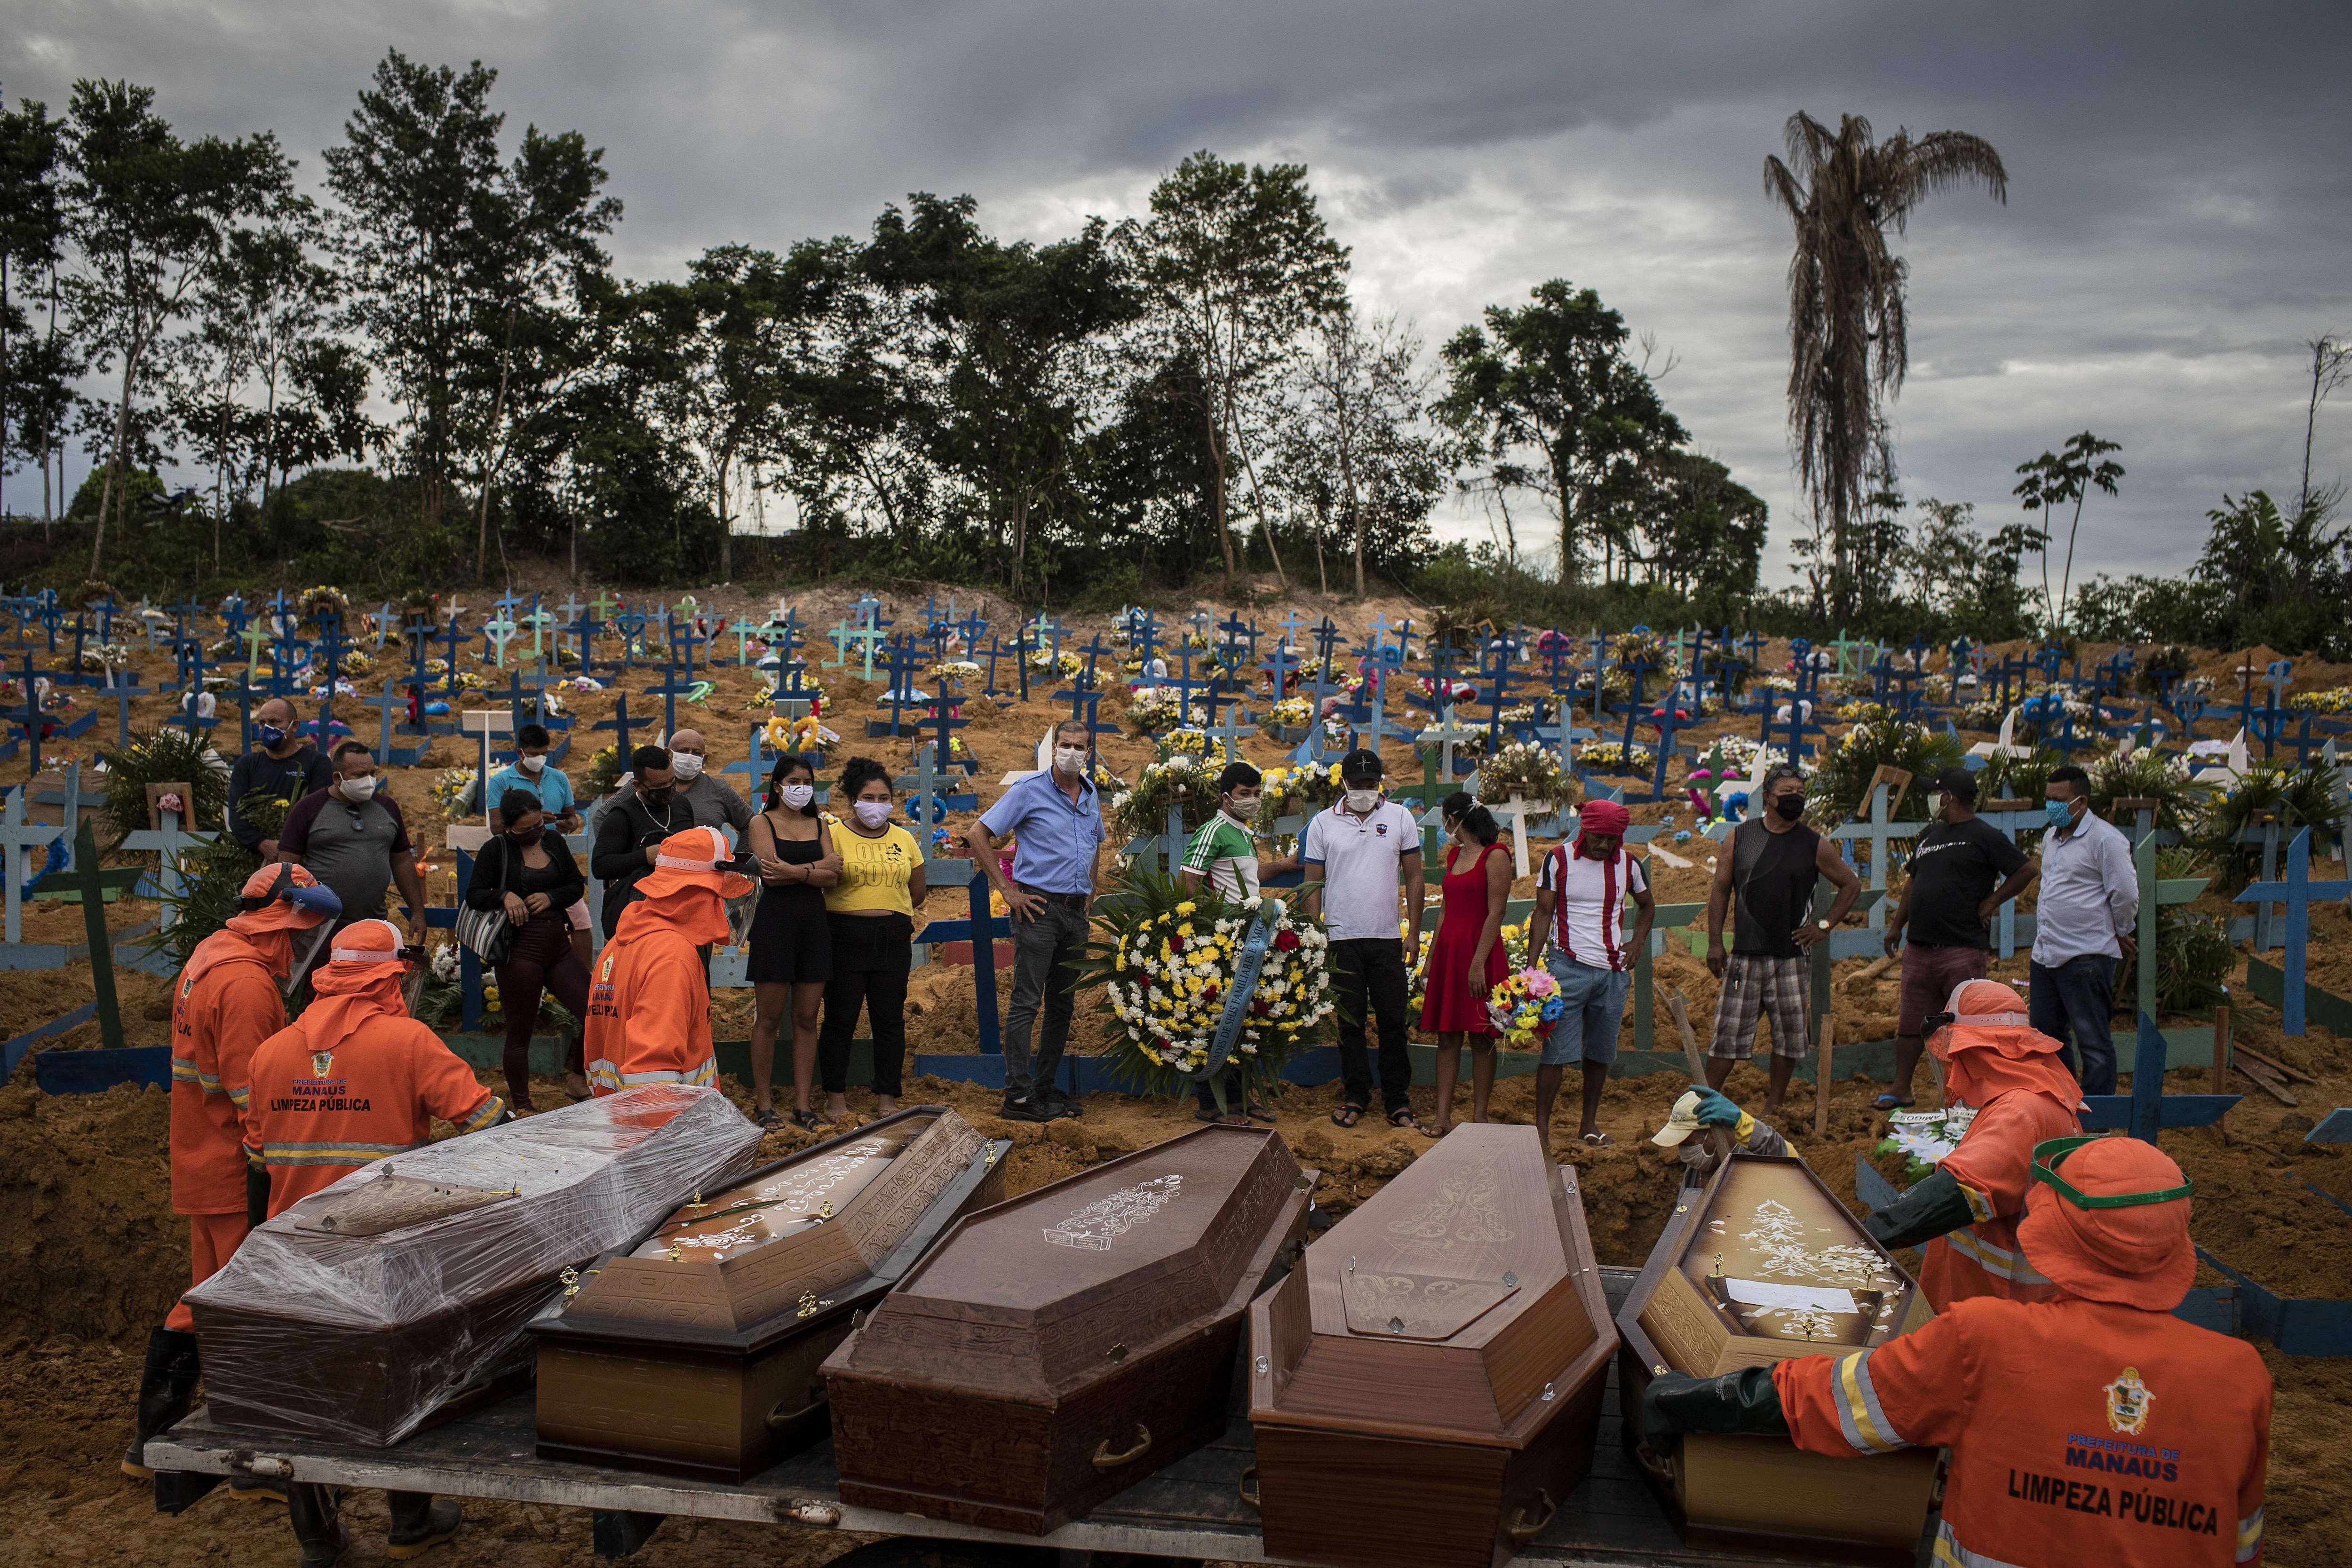 أشخاص يحضرون جنازة بسبب فيروس كورونا في مقبرة جماعية في مقبرة نوسا سينهورا أباريسيدا في ماناوس ، البرازيل.